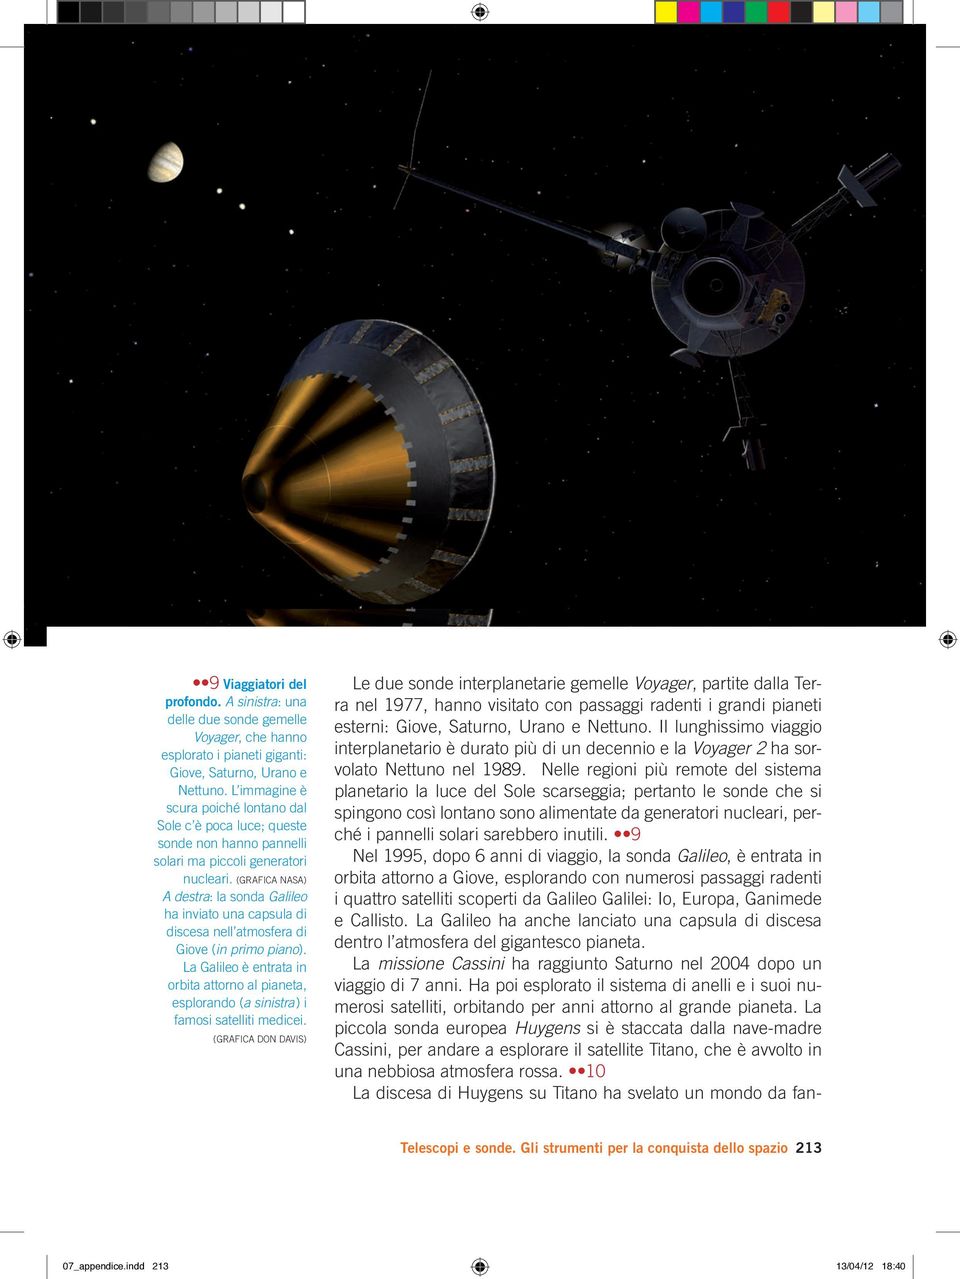 (GRAFICA NASA) A destra: la sonda Galileo ha inviato una capsula di discesa nell atmosfera di Giove (in primo piano).